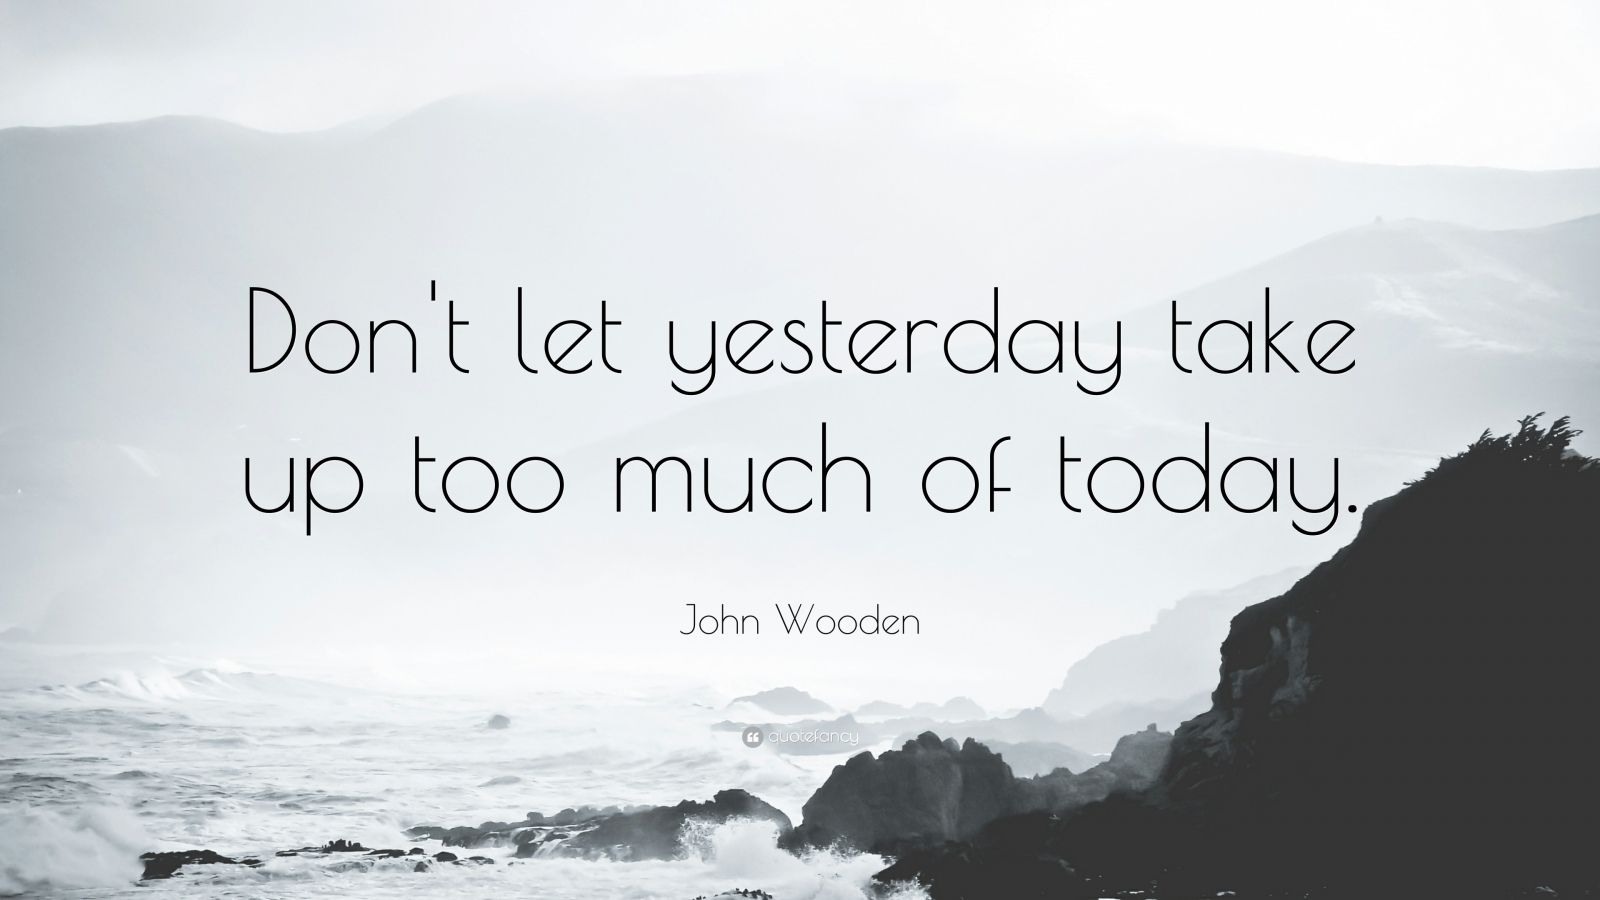 John Wooden Quotes (41 wallpapers) - Quotefancy